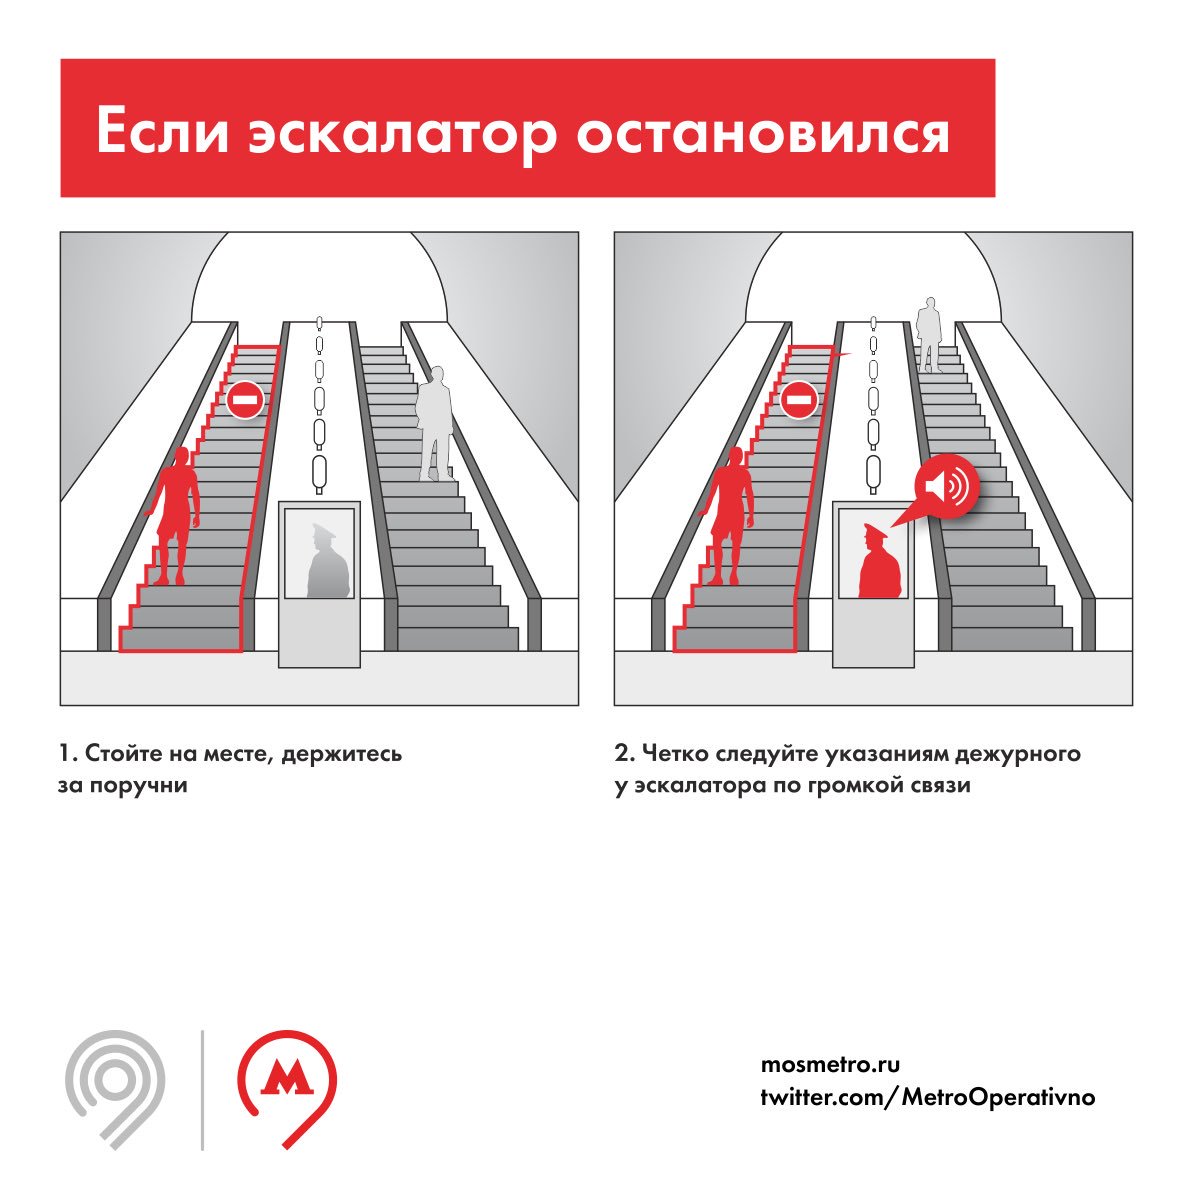 Эскалатор метрополитена безопасность. Правила поведения в метрополитене на эскалаторе. Безопасность на эскалаторе в метро. Безопасность в метрополитене. Правила на эскалаторе.